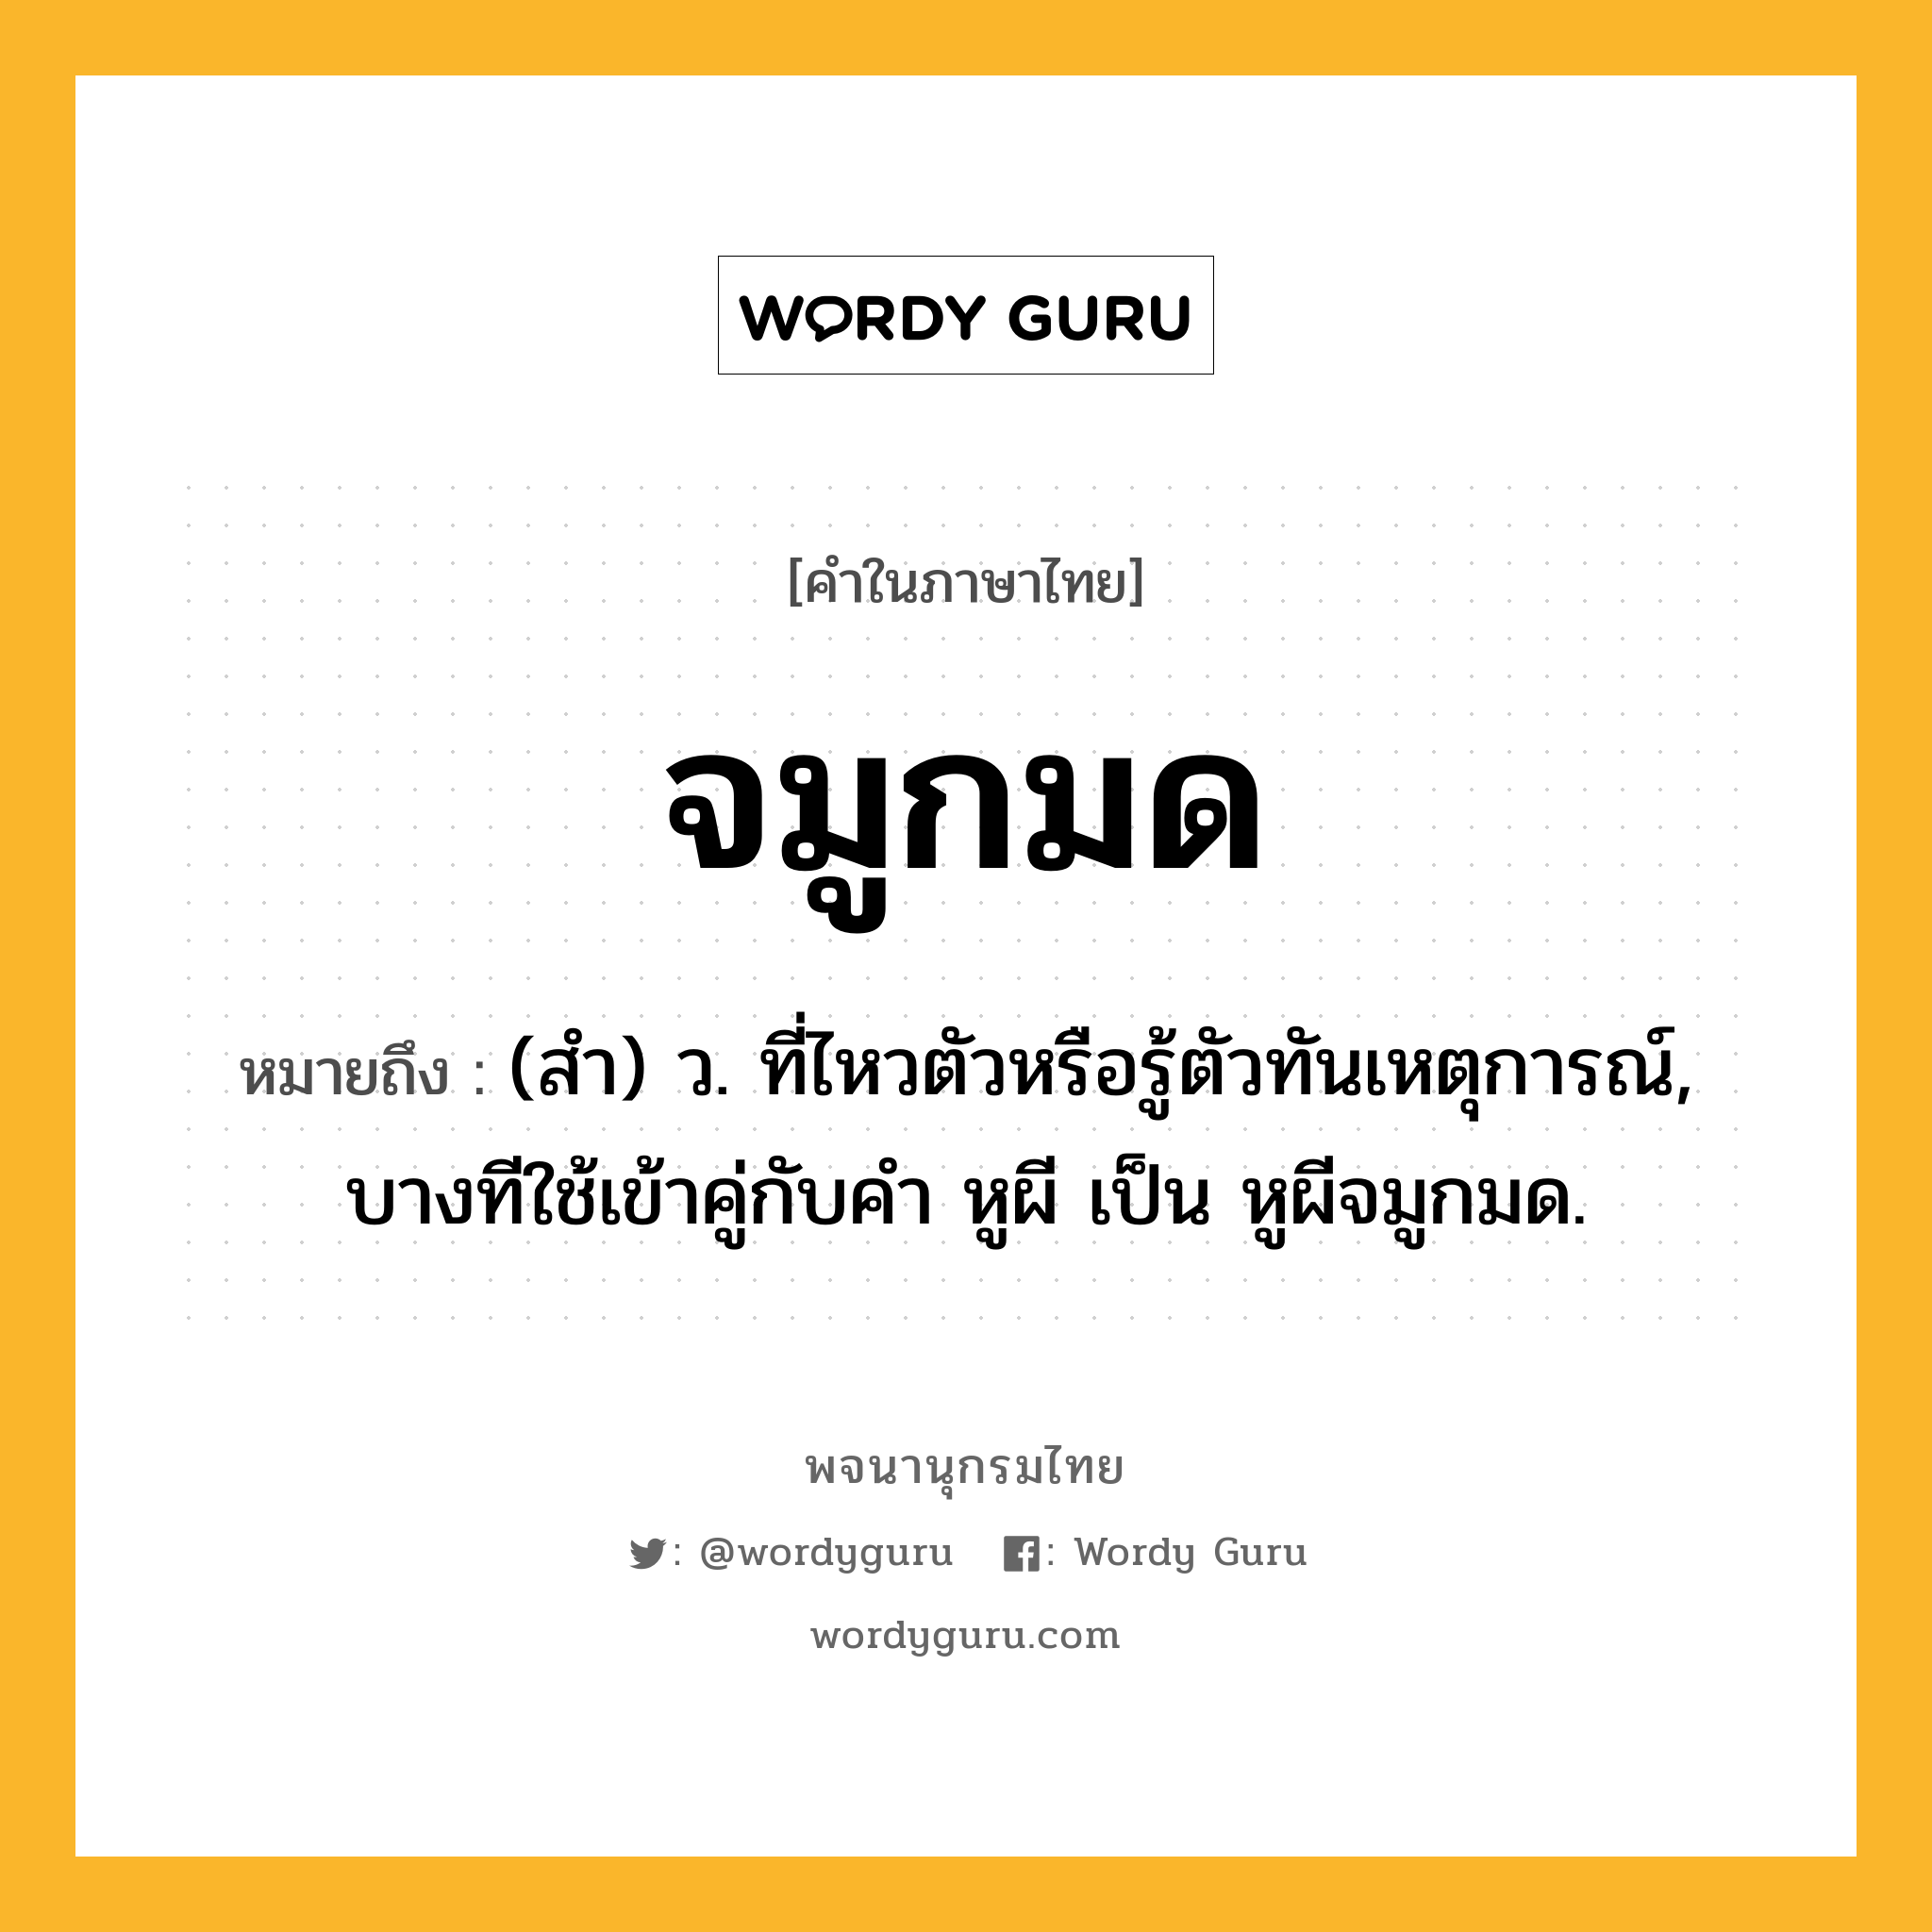 จมูกมด ความหมาย หมายถึงอะไร?, คำในภาษาไทย จมูกมด หมายถึง (สํา) ว. ที่ไหวตัวหรือรู้ตัวทันเหตุการณ์, บางทีใช้เข้าคู่กับคํา หูผี เป็น หูผีจมูกมด.